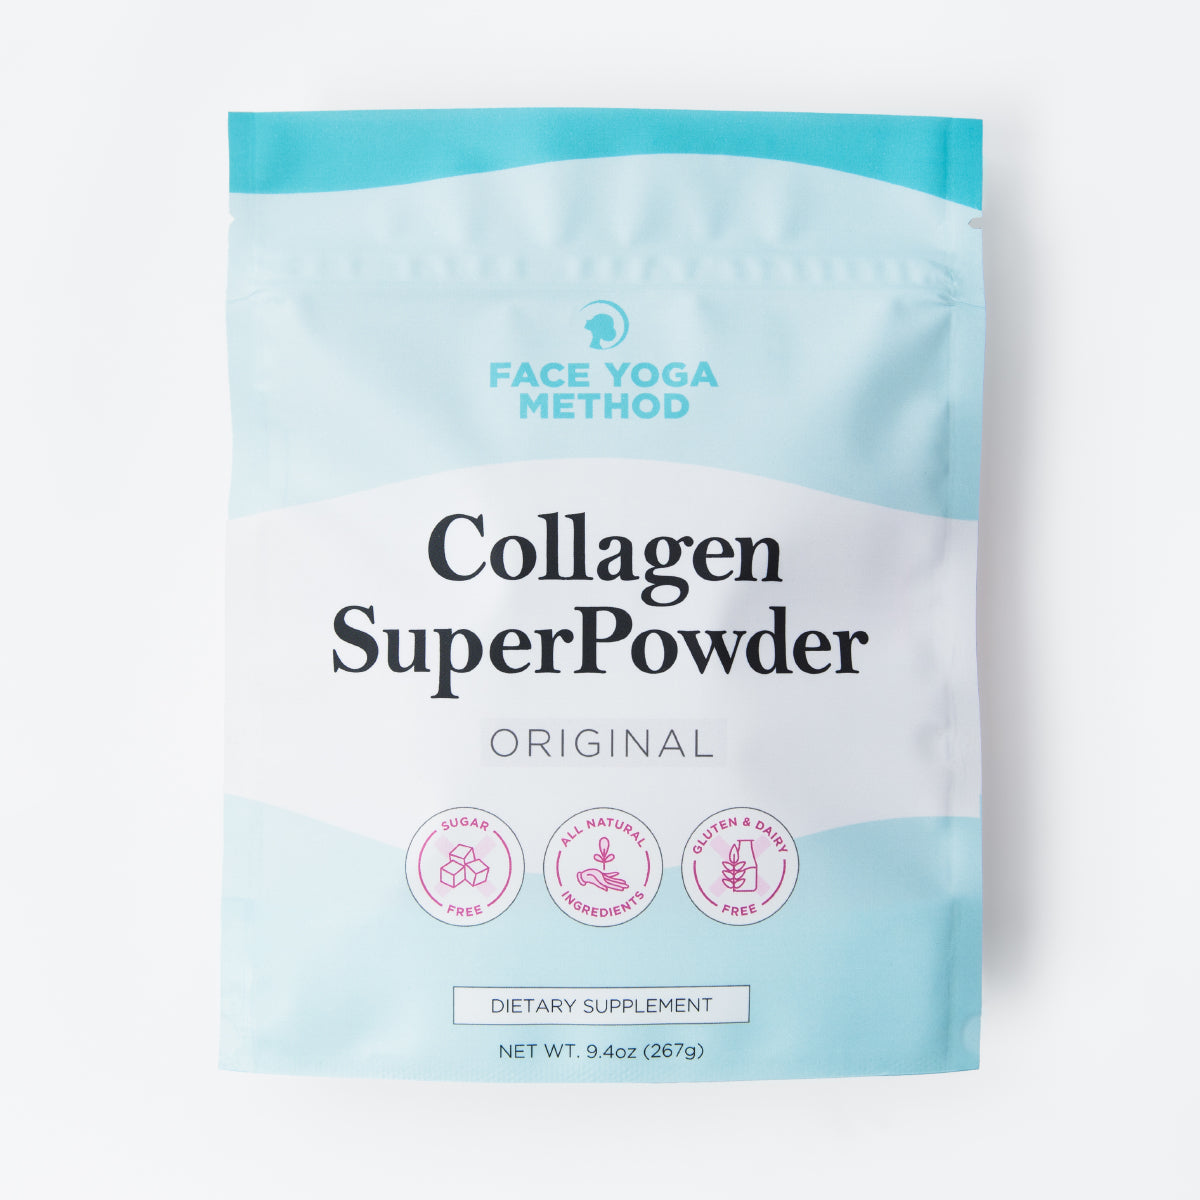 Collagen SupoerPowder supplement packaging